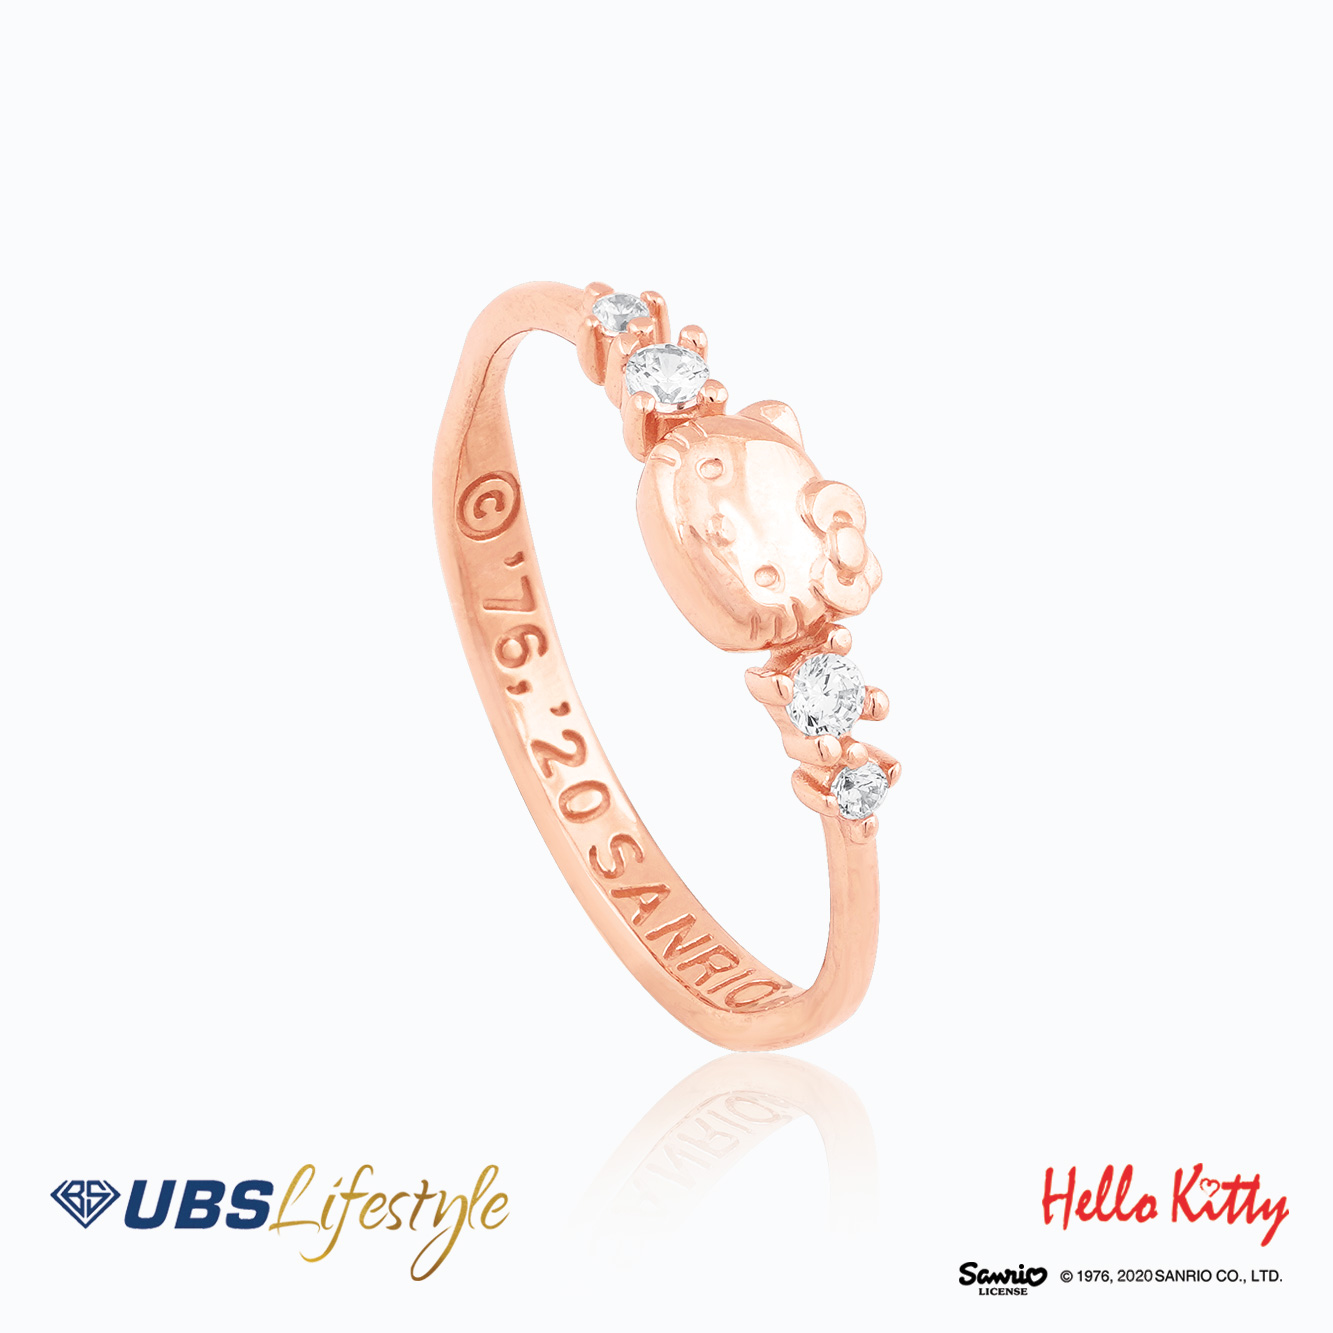 UBS Cincin Emas Sanrio Hello Kitty - Ccz0026R - 17K